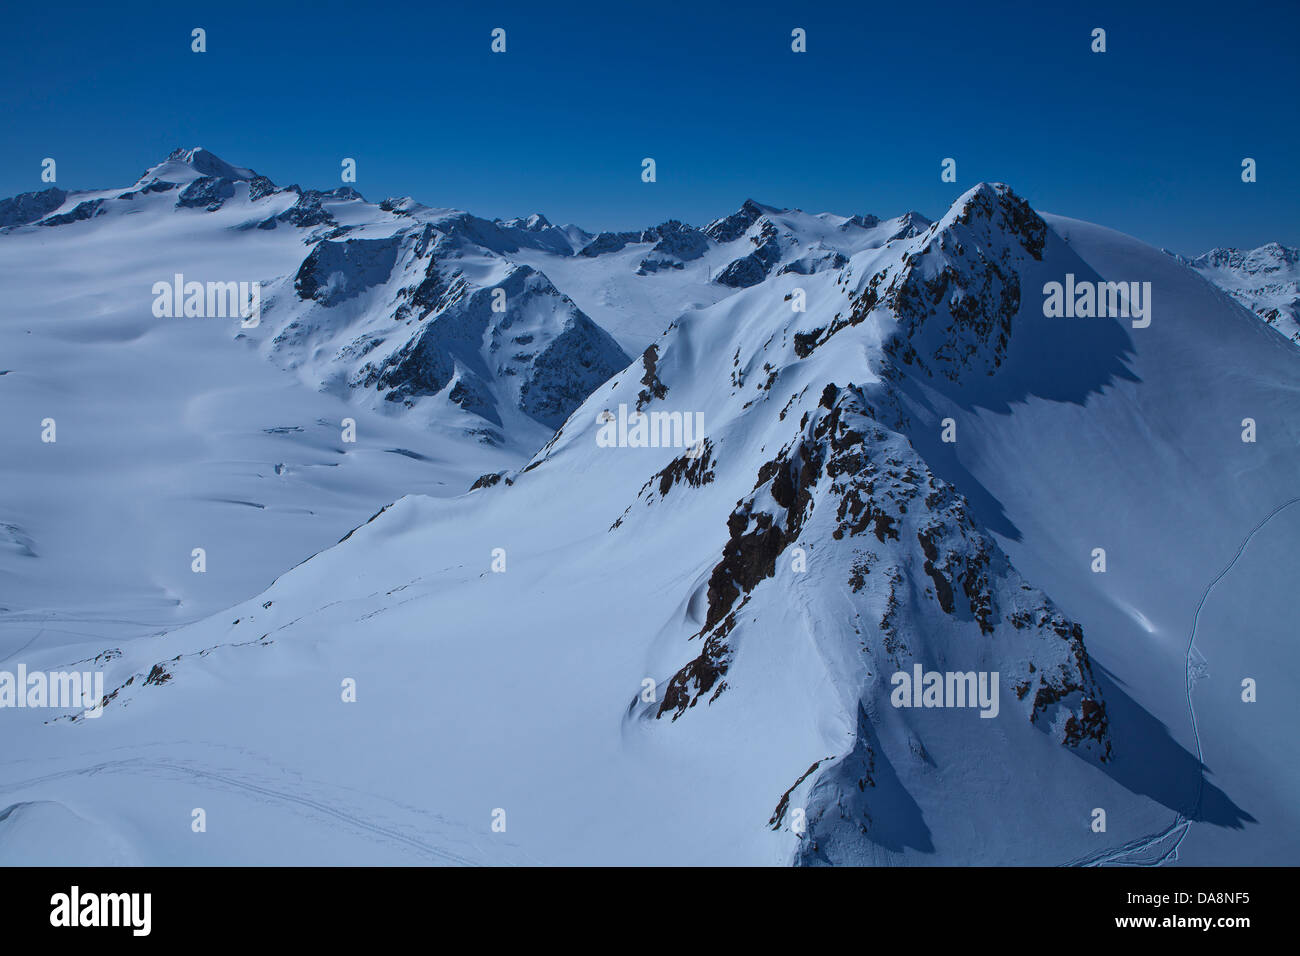 Austria, Europa Tyrol, Ötztal, Sölden, inverno, ghiacciaio, sciare sul ghiacciaio, area Big 3, Wildspitze, panorama, visualizzare piste da sci, oe Foto Stock